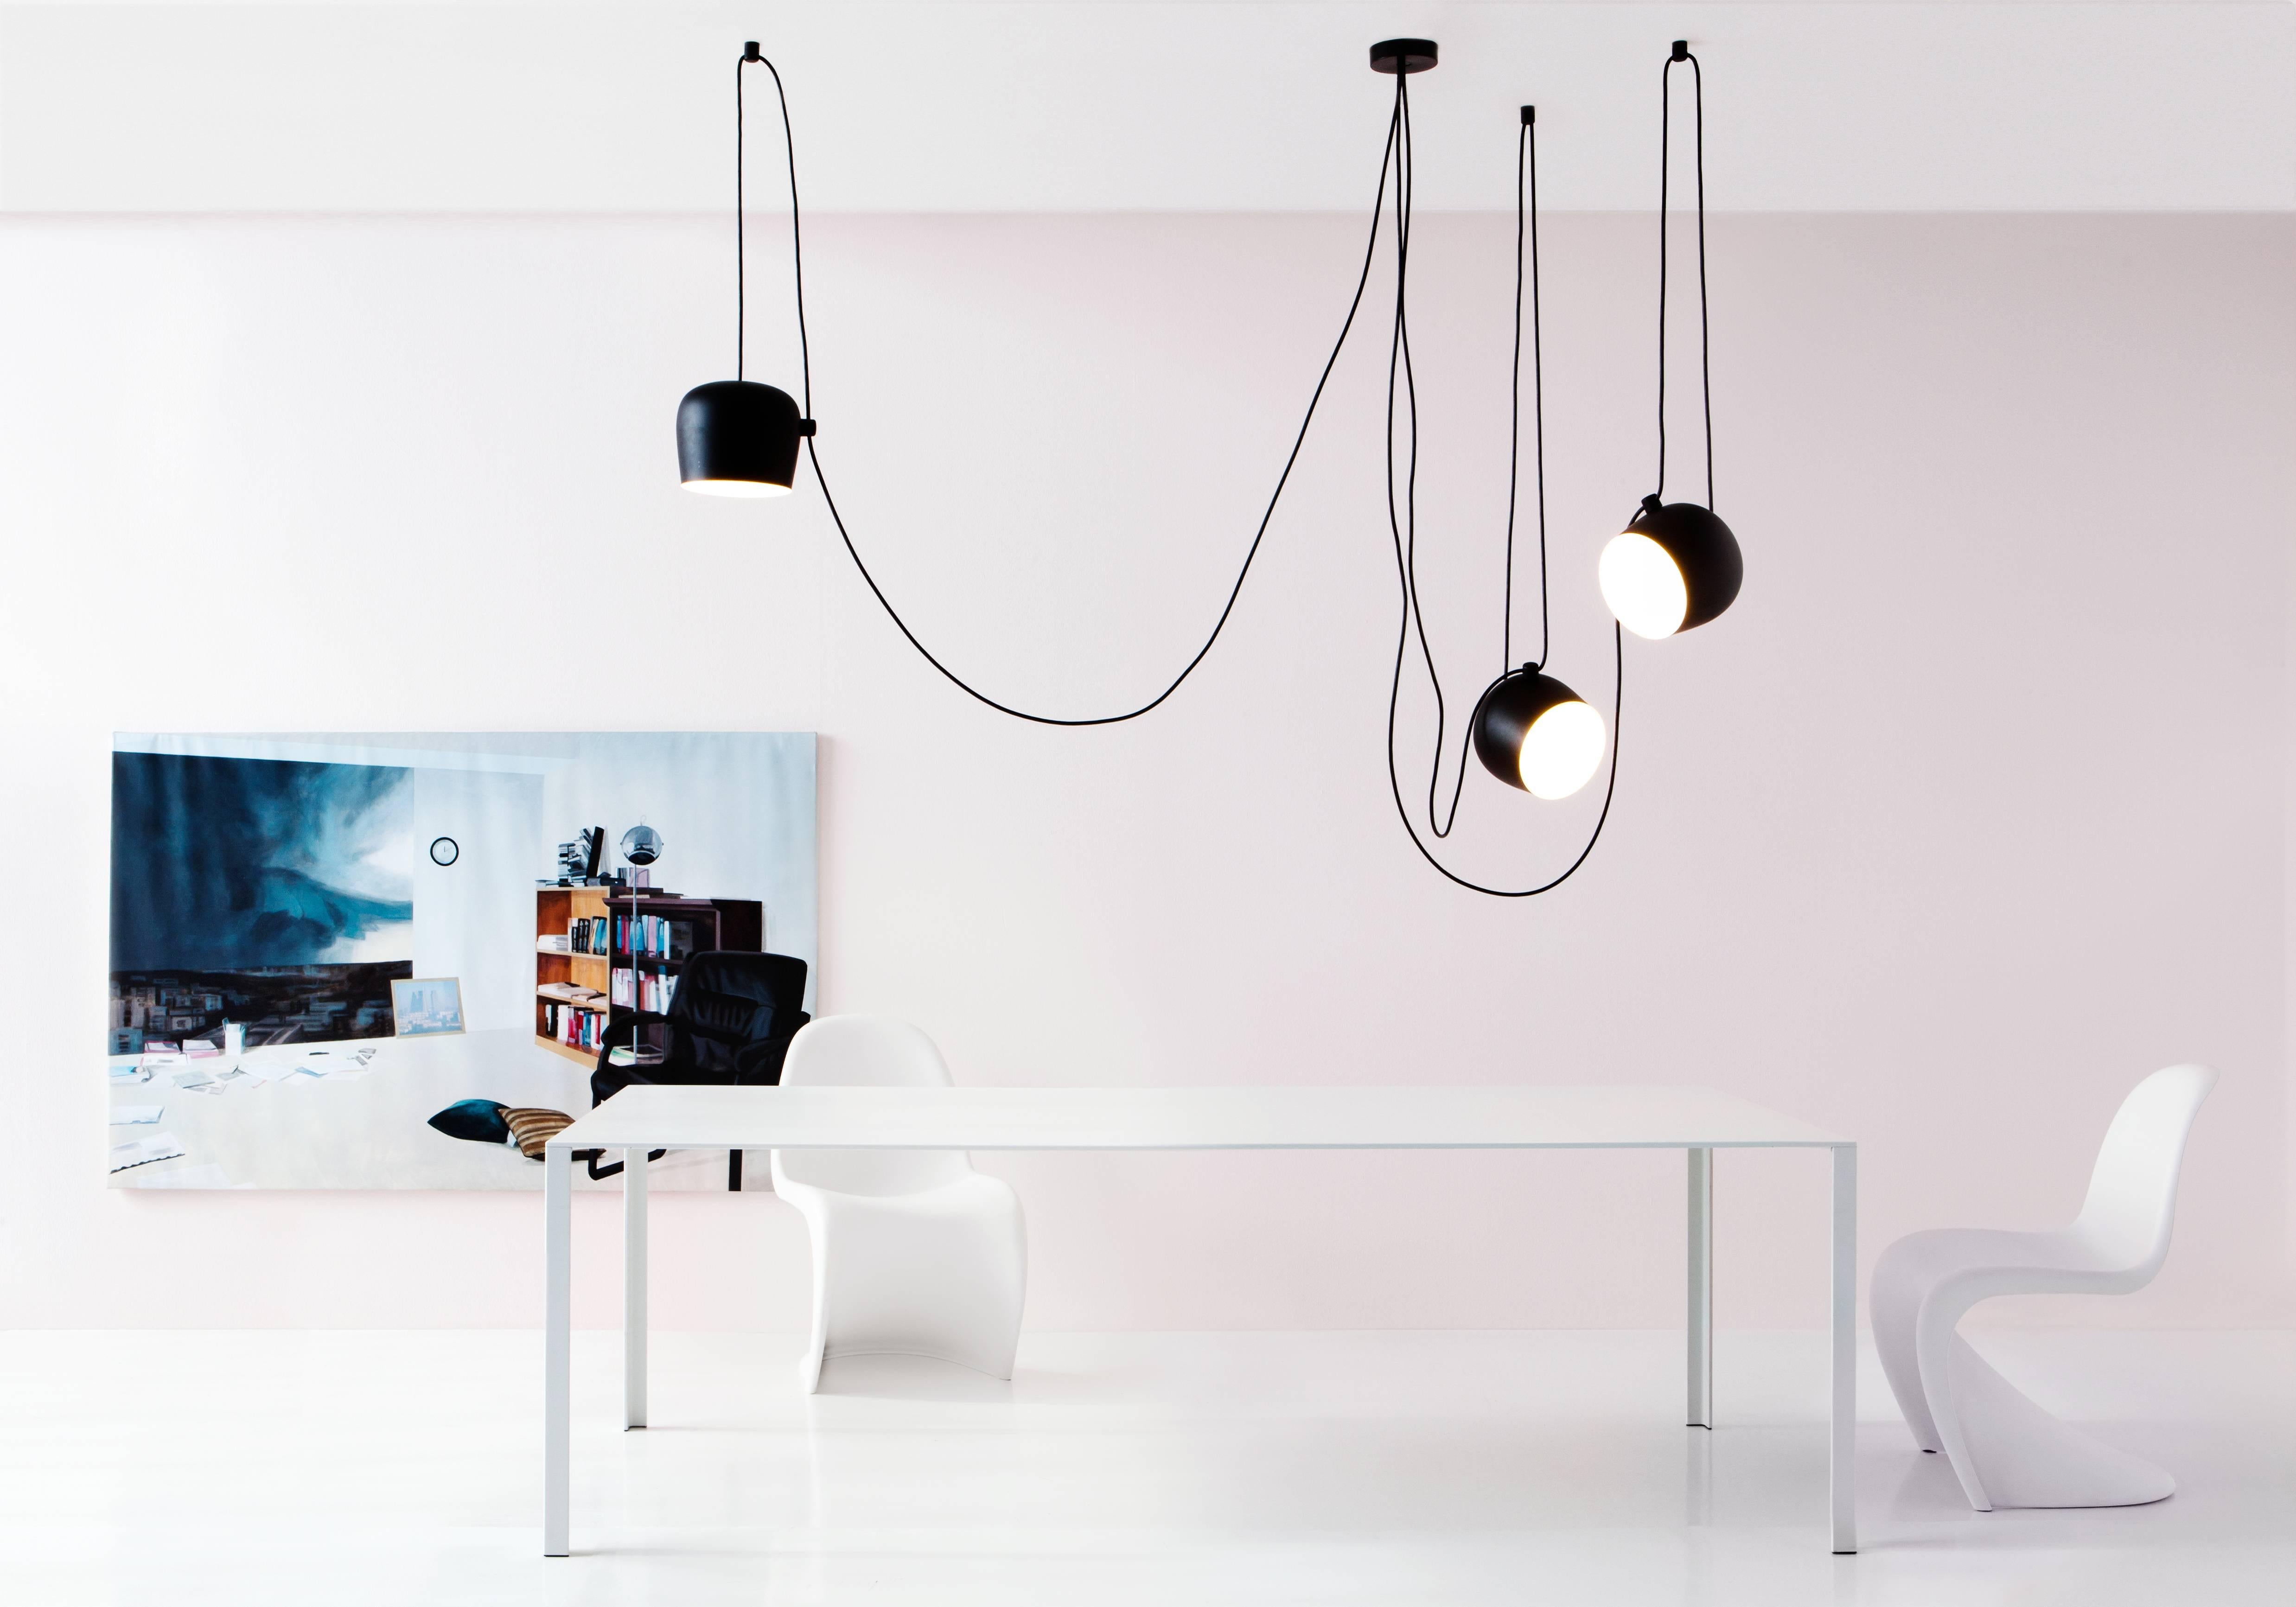 FLOS Aim Schwarzes Leuchtenset mit drei Lampen und Baldachin von Ronan & Erwan Bouroullec

Die 2010 von den Gebrüdern Bouroullec entworfene Deckenleuchte AIM ist ein Design, das sich auf das Wesentliche - und Schöne - reduziert. Diese innovative